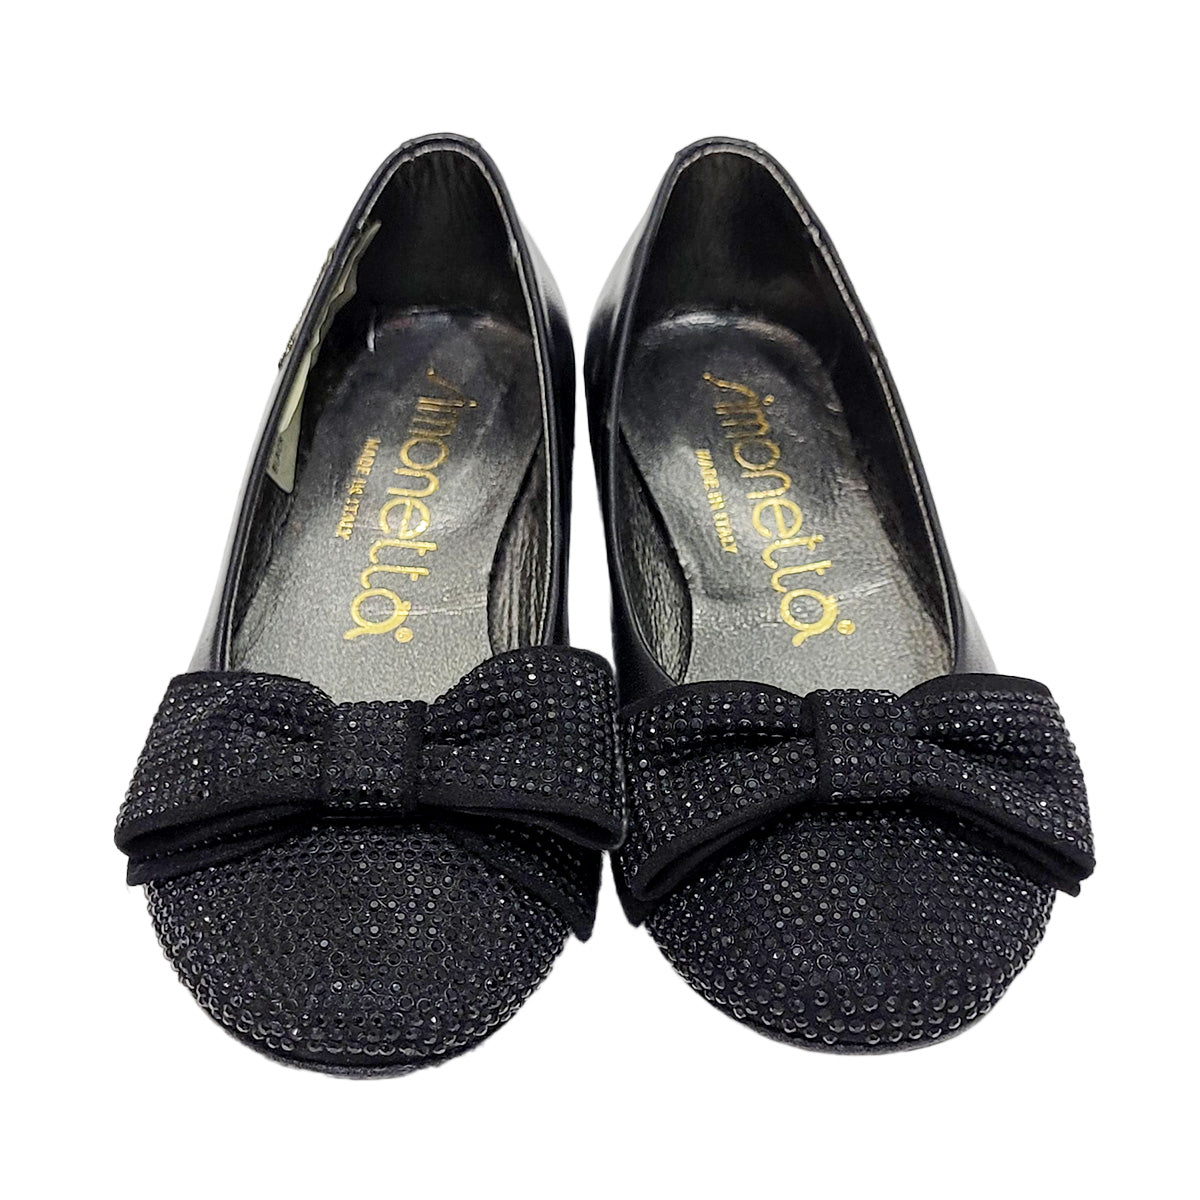 Simonetta Black-colored shoe